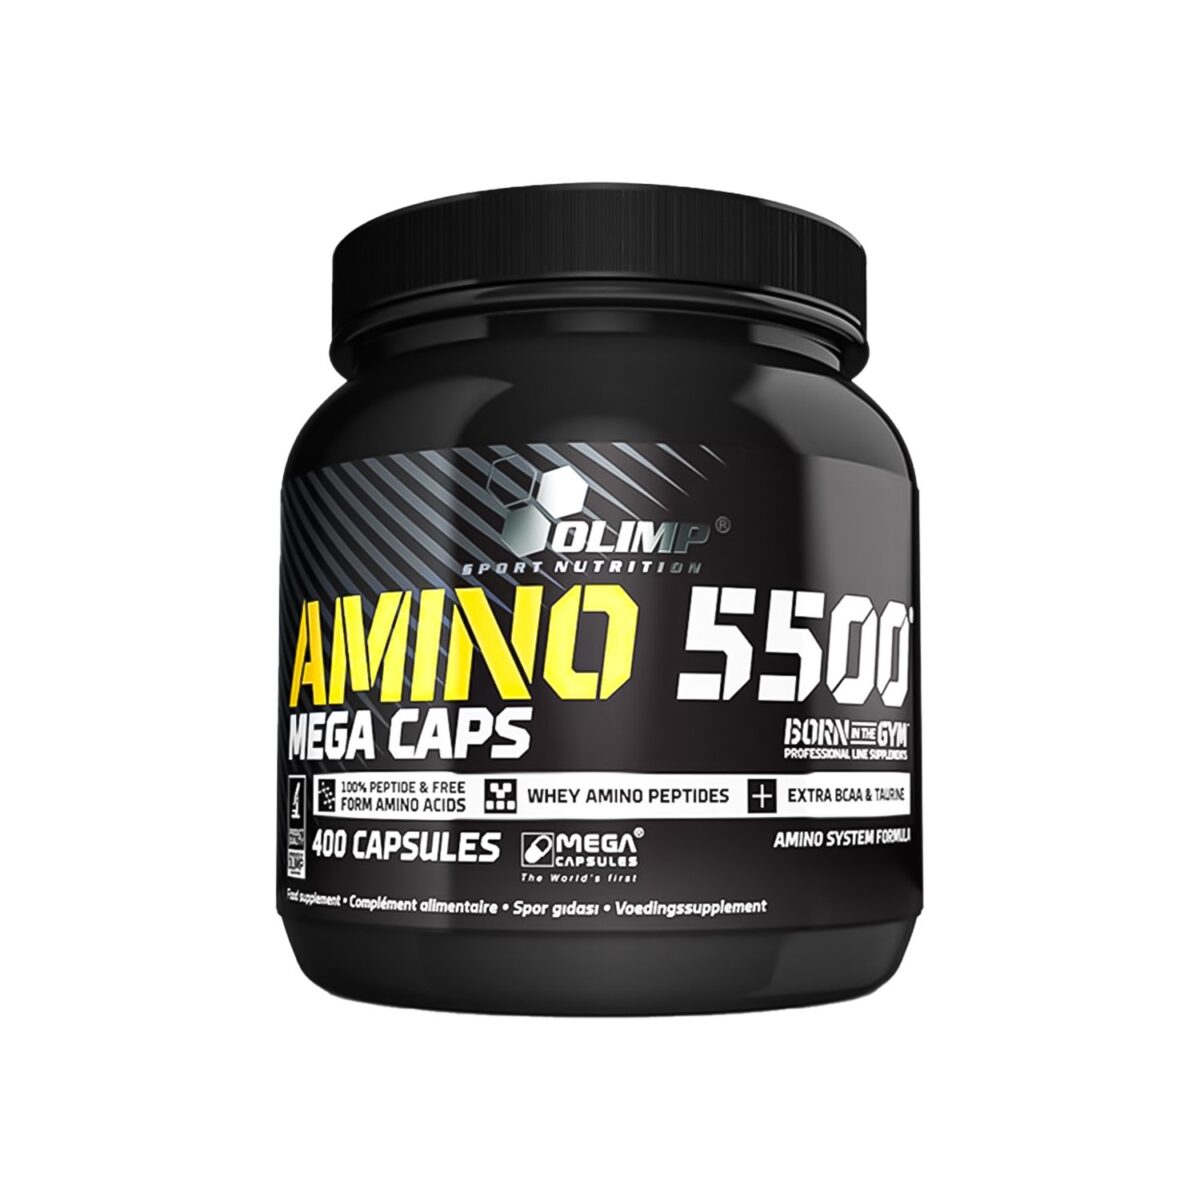 Olimp Amino 5500 Mega Caps 400 Tablet | FittShake orijinal ürün garantisiyle protein tozu, amino asit, kilo ve hacim, kreatin vb. sporcu gıdalarını %5 havale indirimi ile uygun fiyatlarla satın alabilirsiniz.